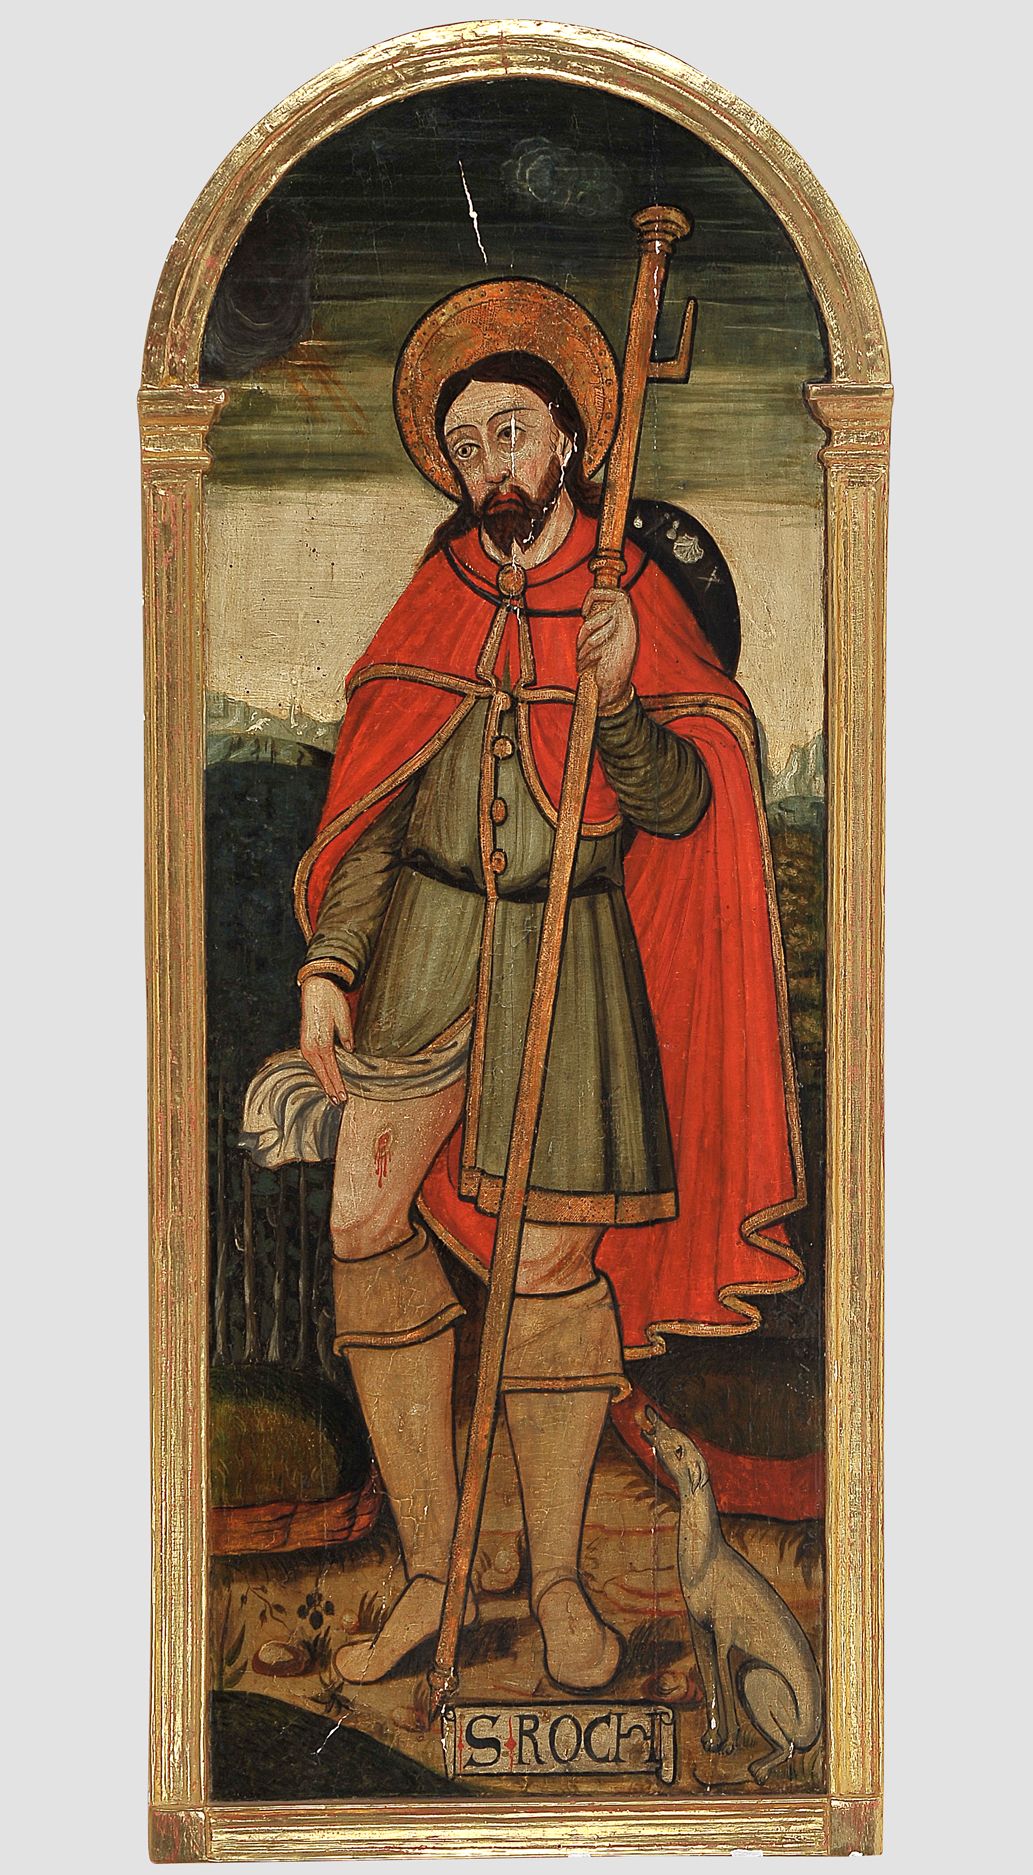 Null San Rocco


Inizio del 16° secolo


olio su tavola di legno


111 x 45 cm

&hellip;